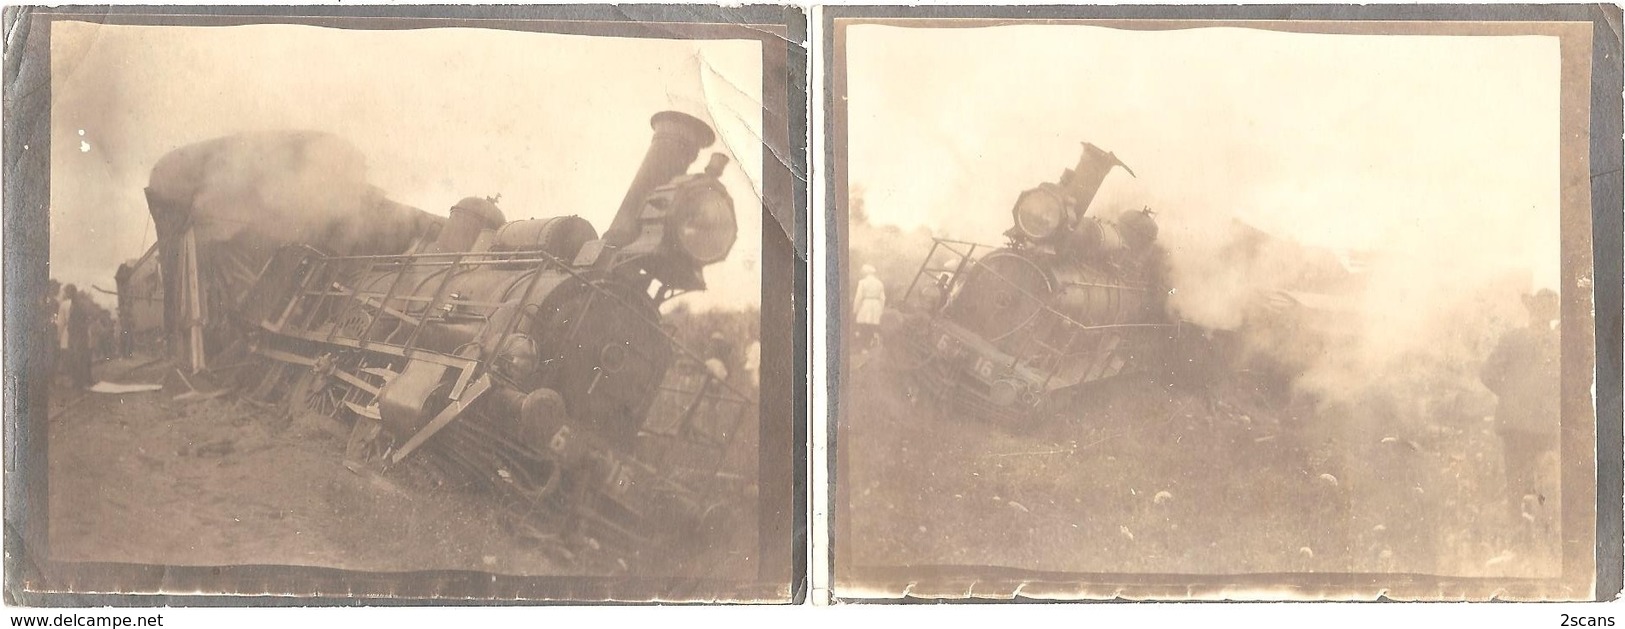 RUSSIE - Lot De 2 Photographies Anciennes (9 X 12 Cm) - ACCIDENT DE TRAIN - Locomotive 6. 16 (vers 1900) - Photo - Russia